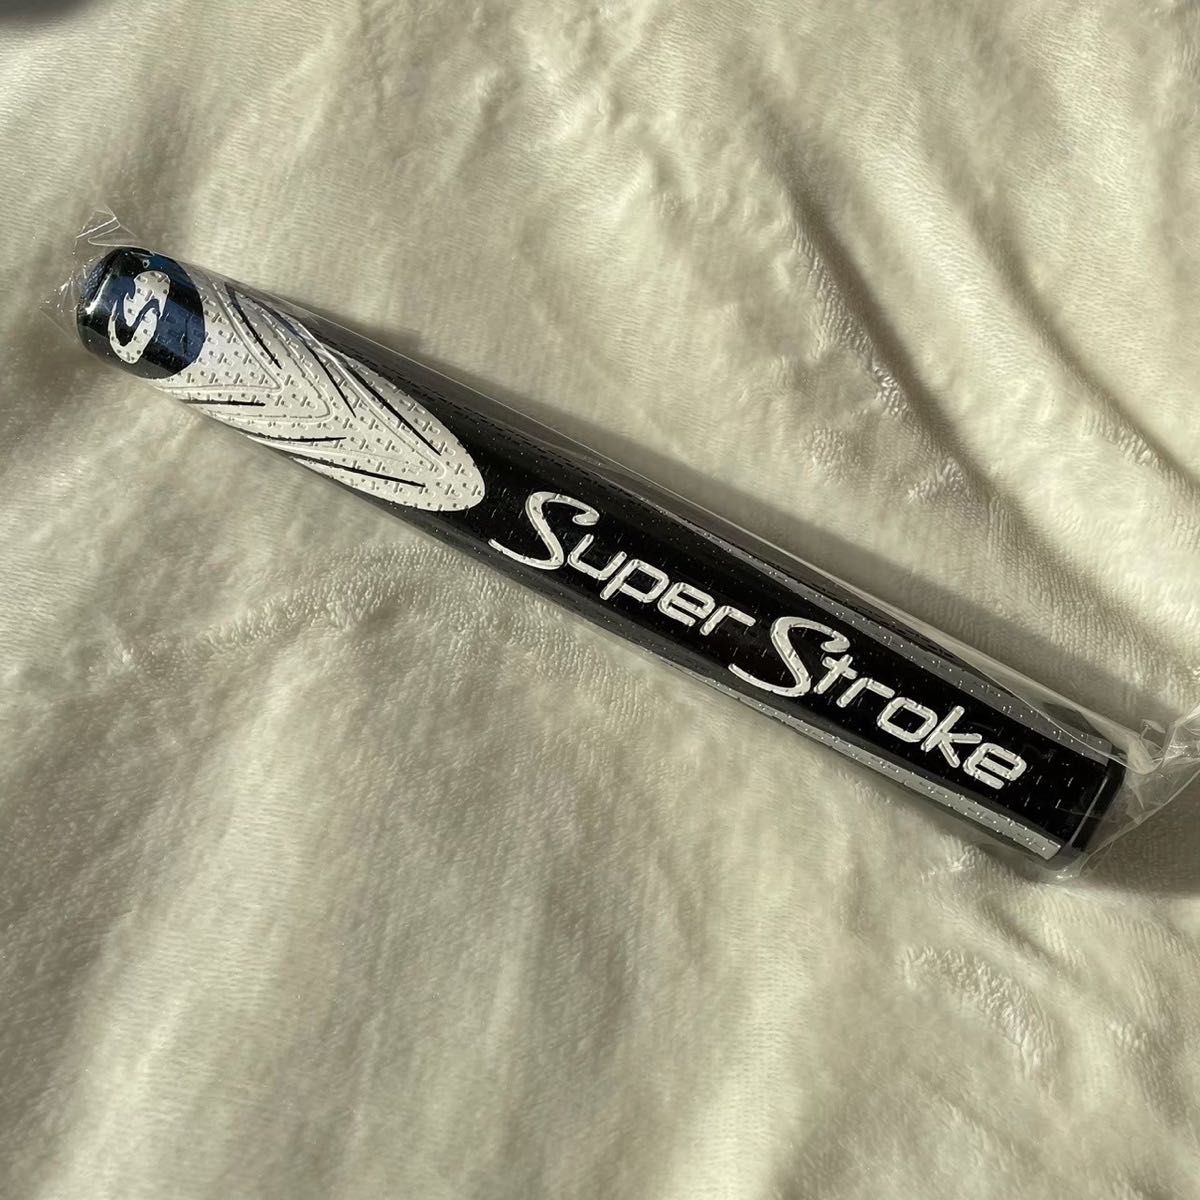 スーパーストローク SLIM 3.0 ゴルフパター グリップ 高品質 白黒色